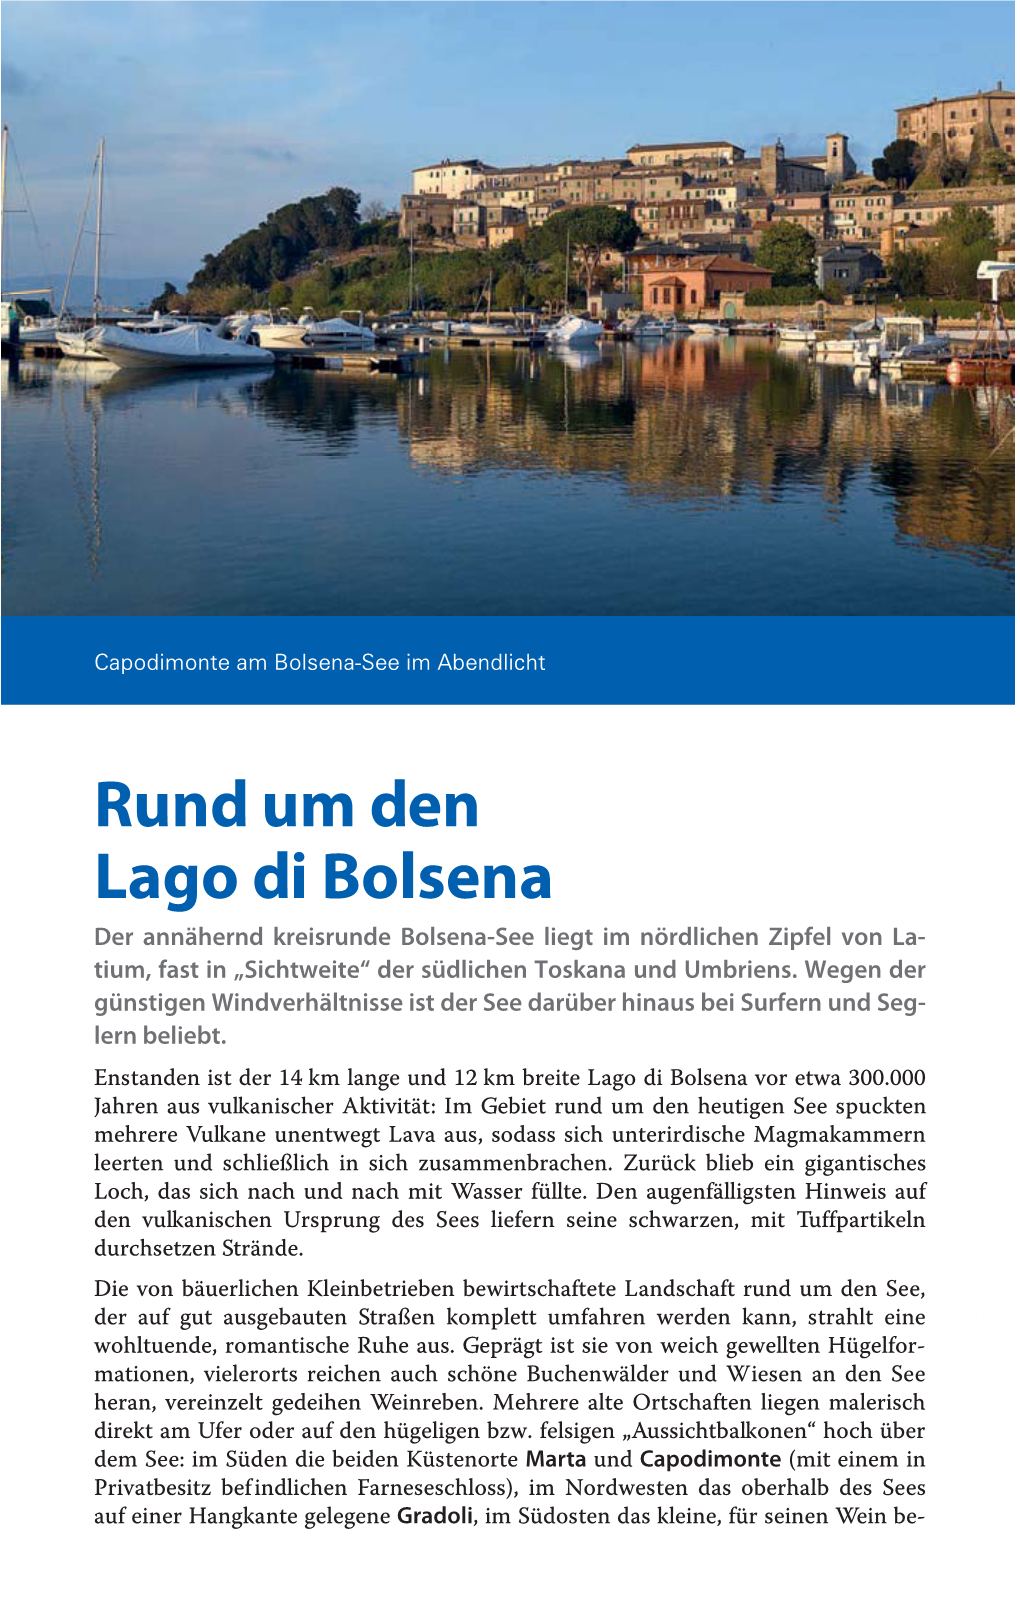 Rund Um Den Lago Di Bolsena Der Annähernd Kreisrunde Bolsena-See Liegt Im Nördlichen Zipfel Von La- Tium, Fast in „Sichtweite“ Der Südlichen Toskana Und Umbriens